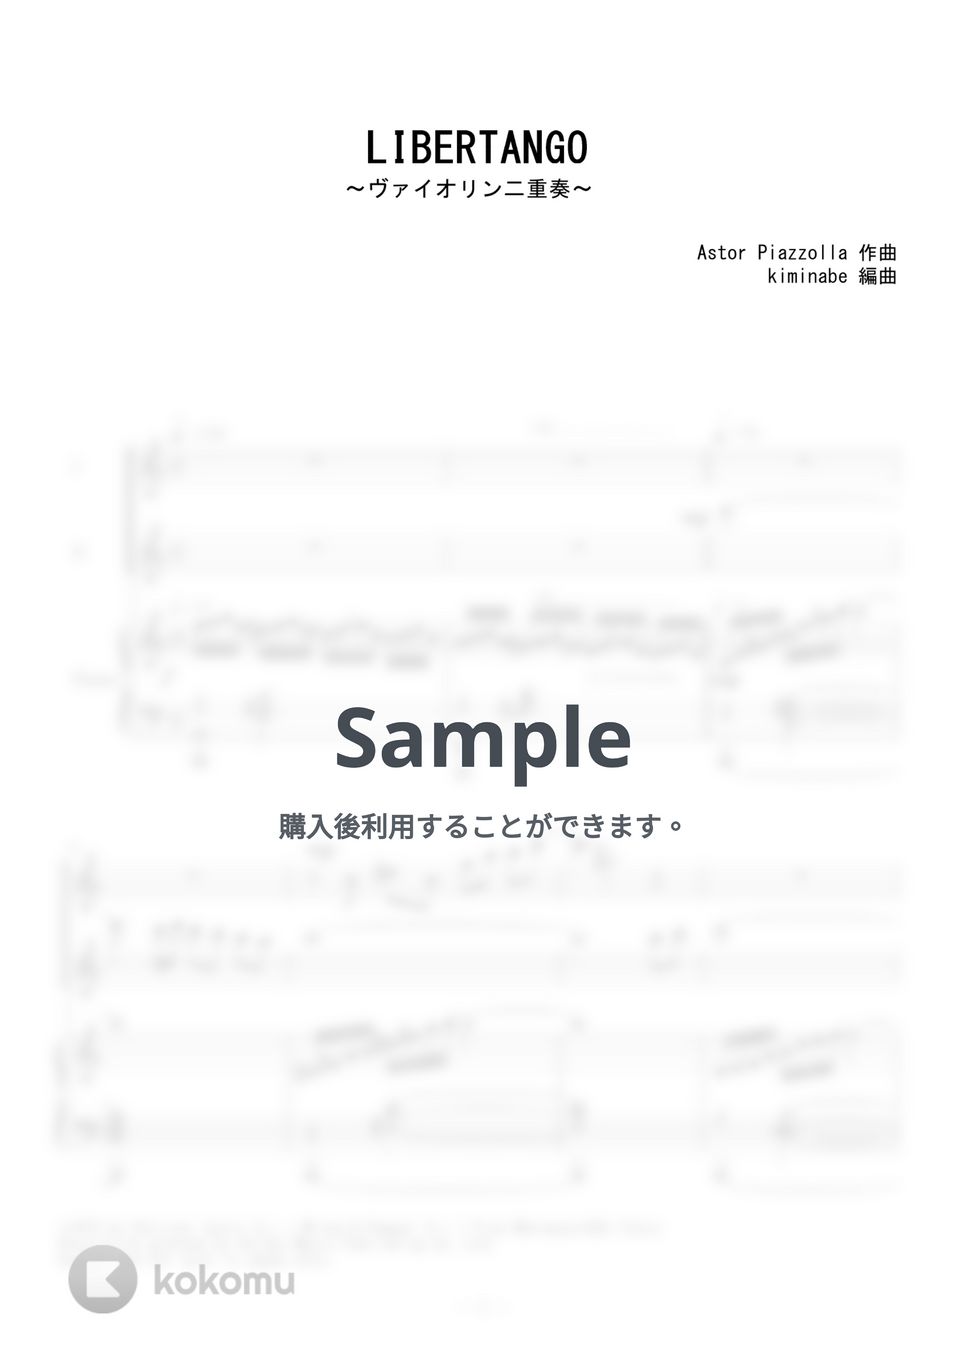 ピアソラ - LIBERTANGO (ヴァイオリン二重奏) by kiminabe